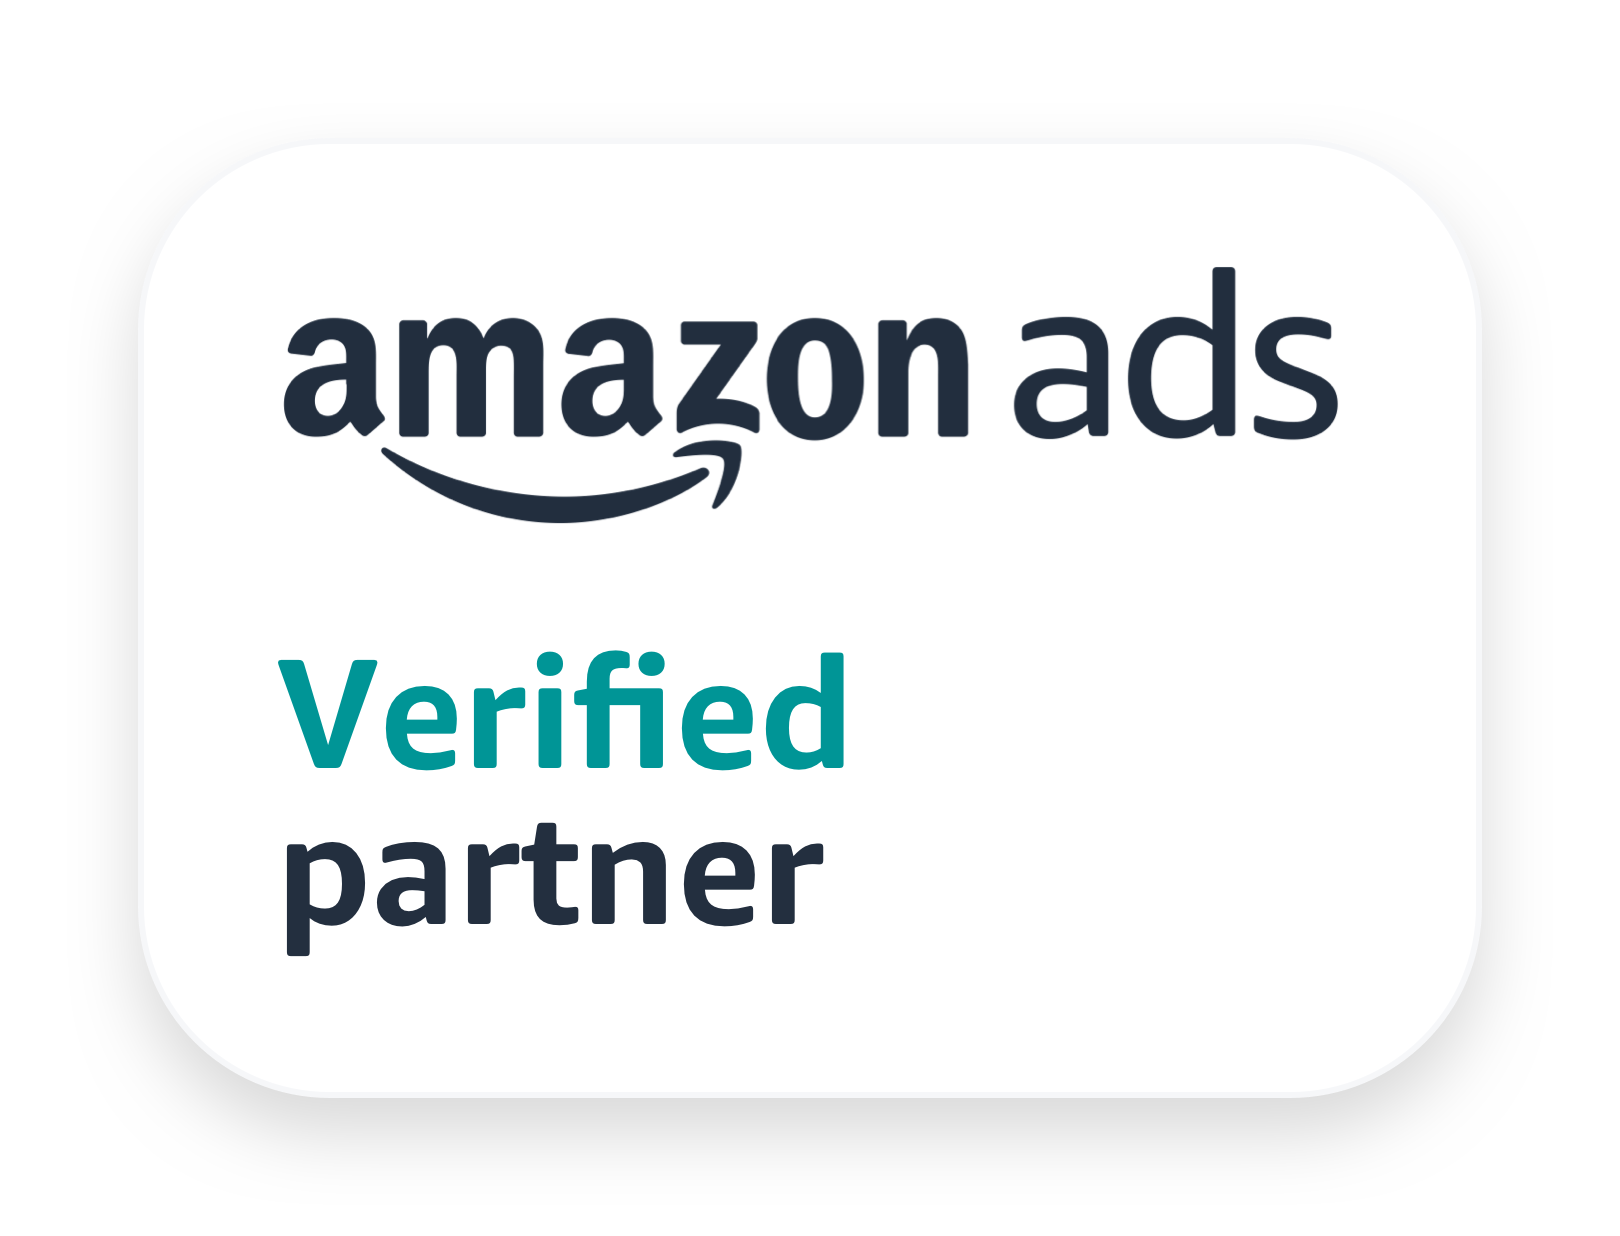 La agencia Digital Angels de Rome, Lazio, Italy gana el premio Amazon ads Partner